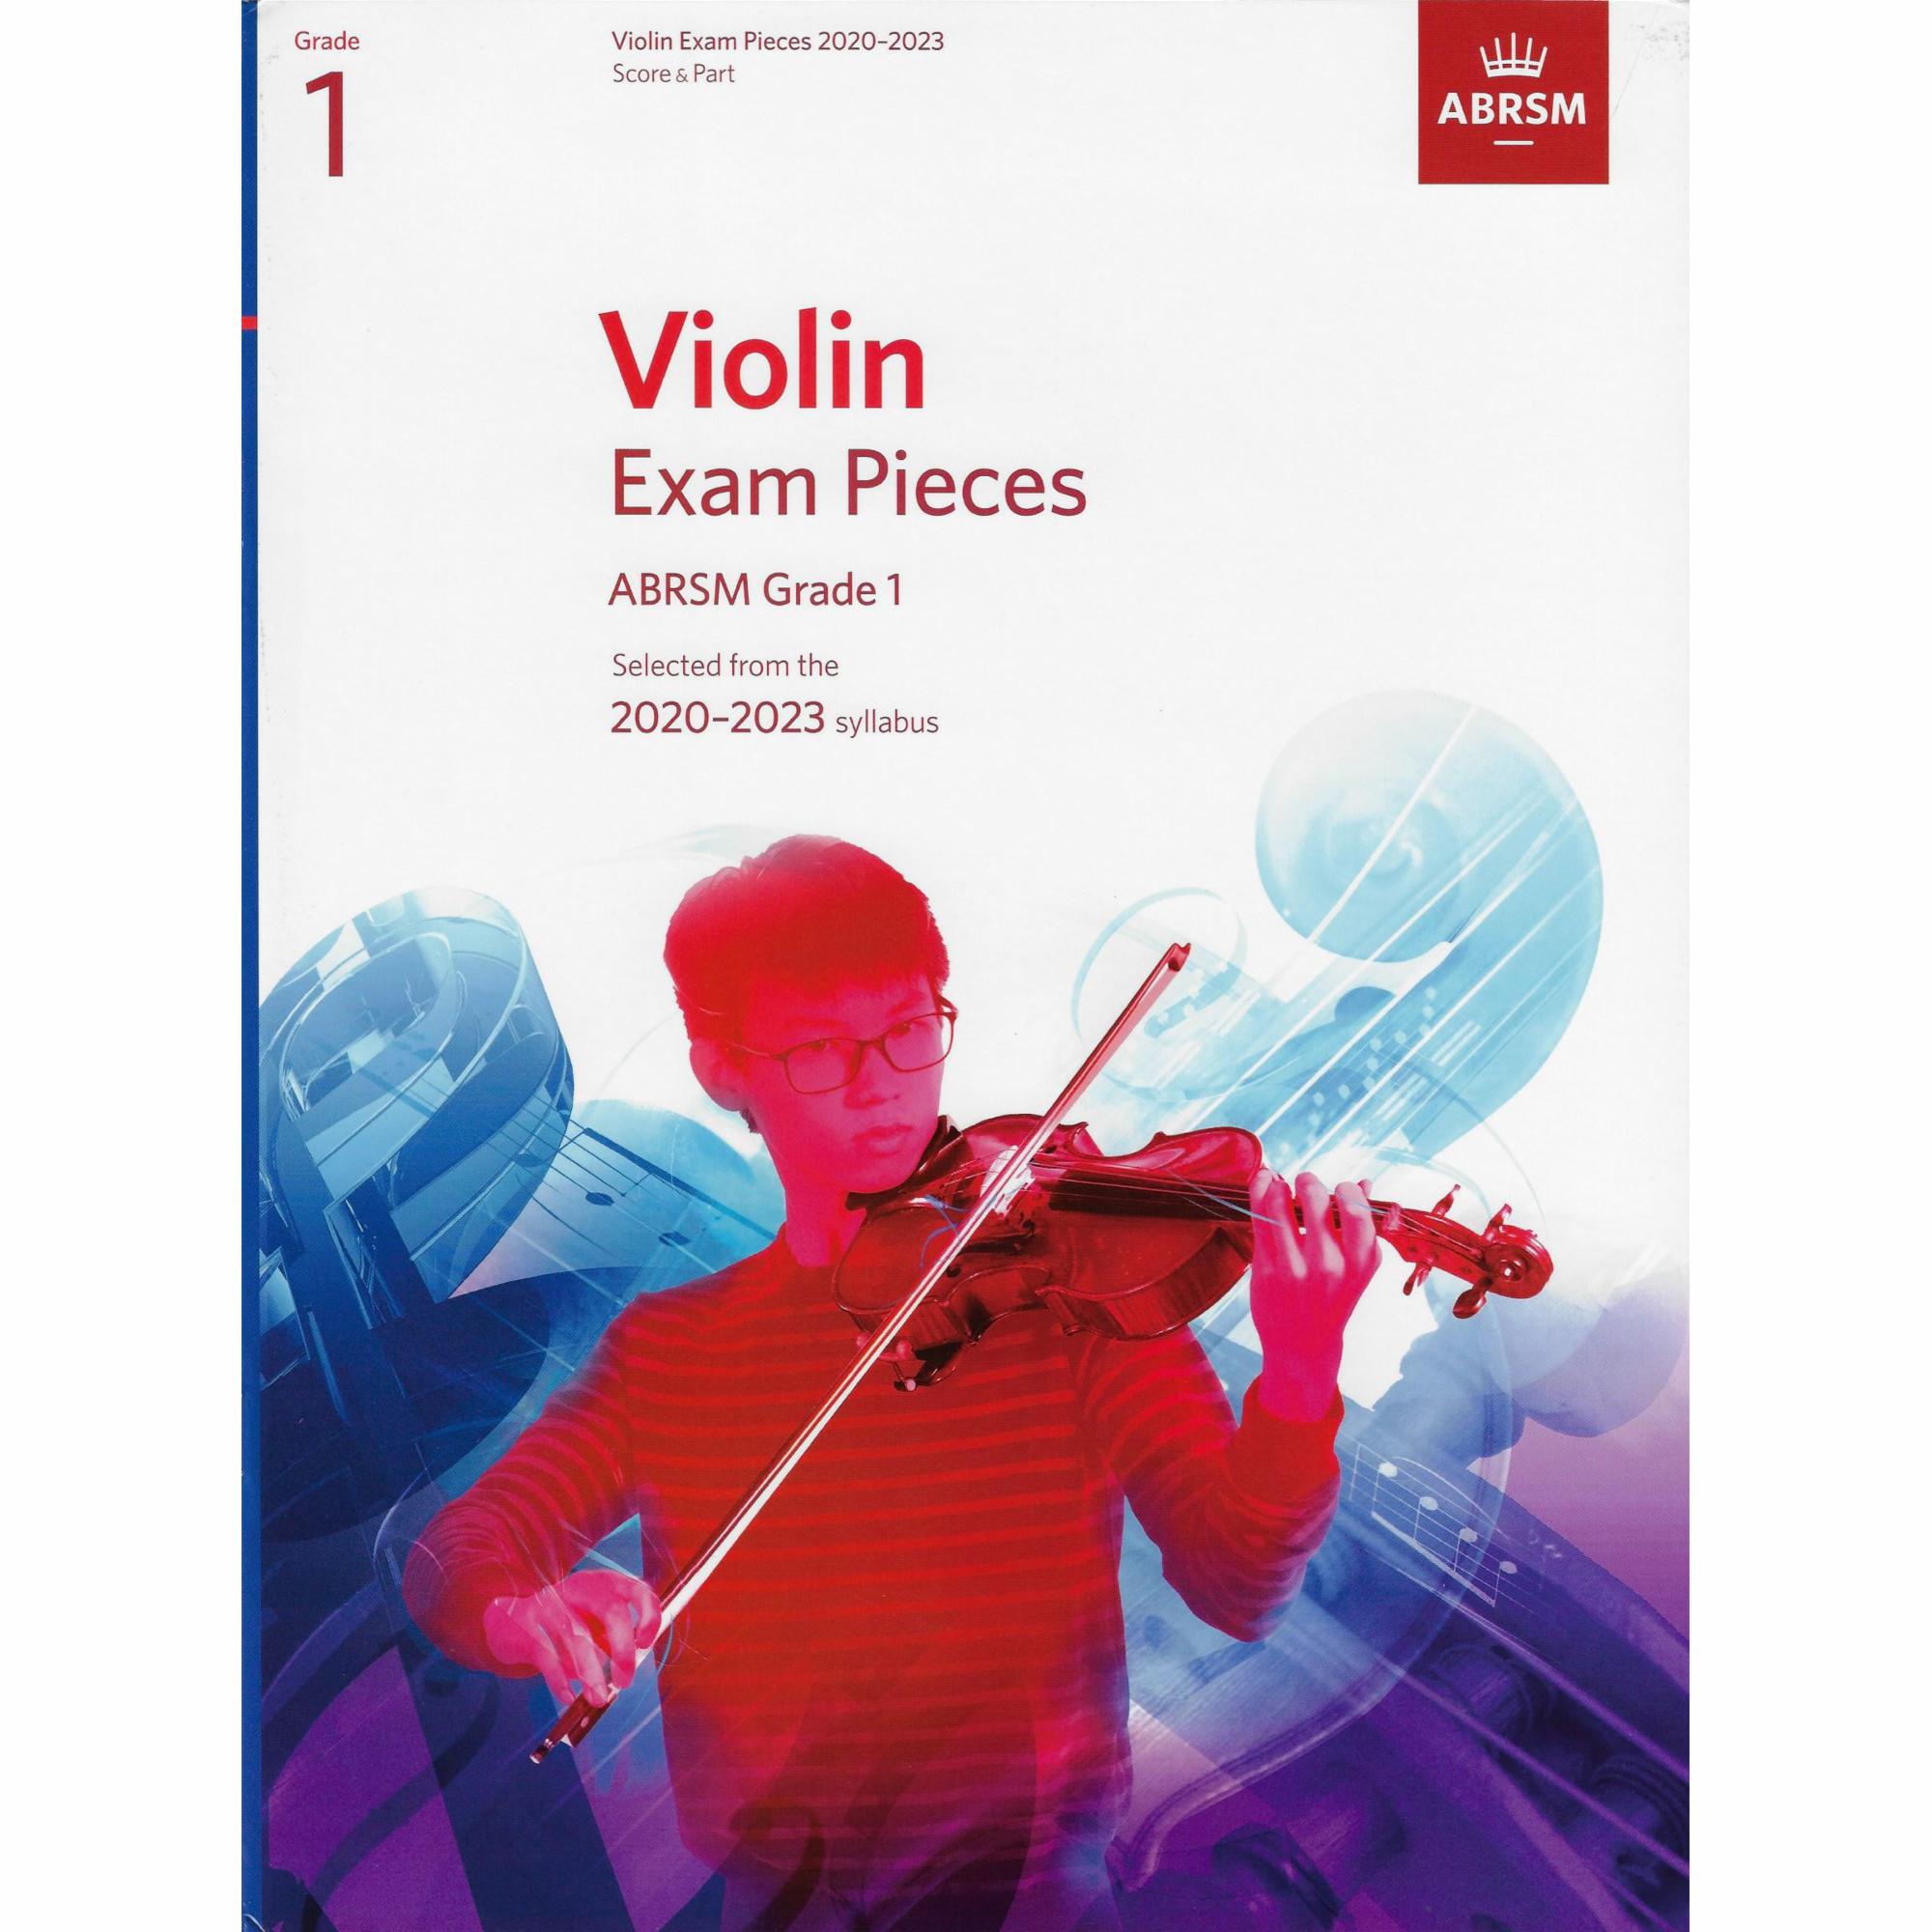 ABRSM Exam Pieces, Grades 1-8 for Violin and Piano